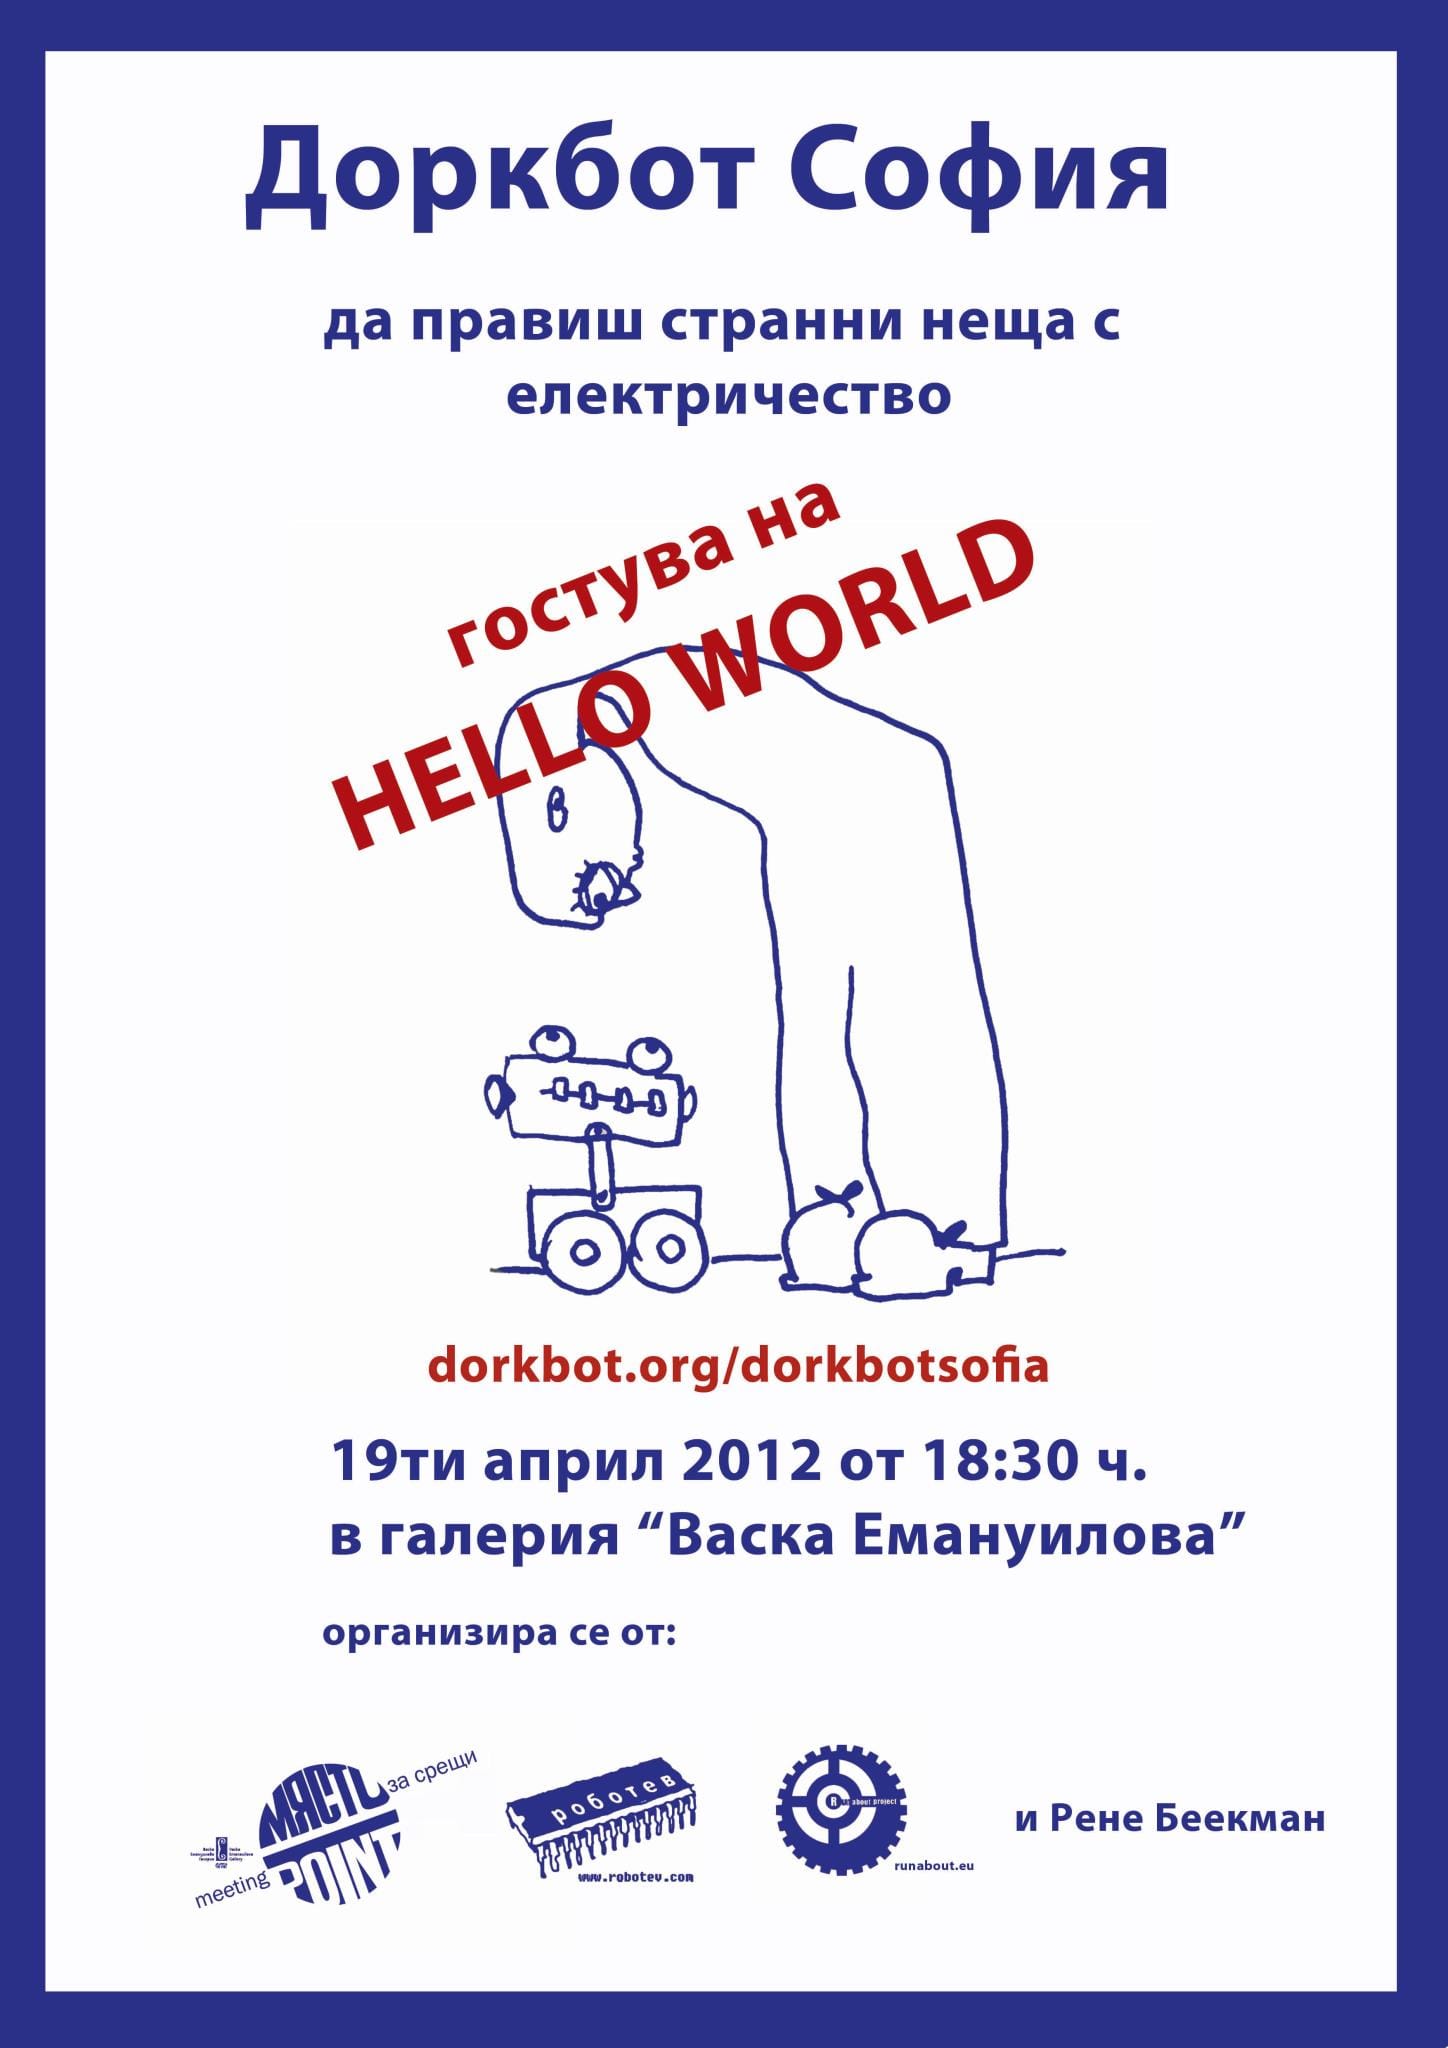 The Dorkbot Sofia #10 @Hello World poster